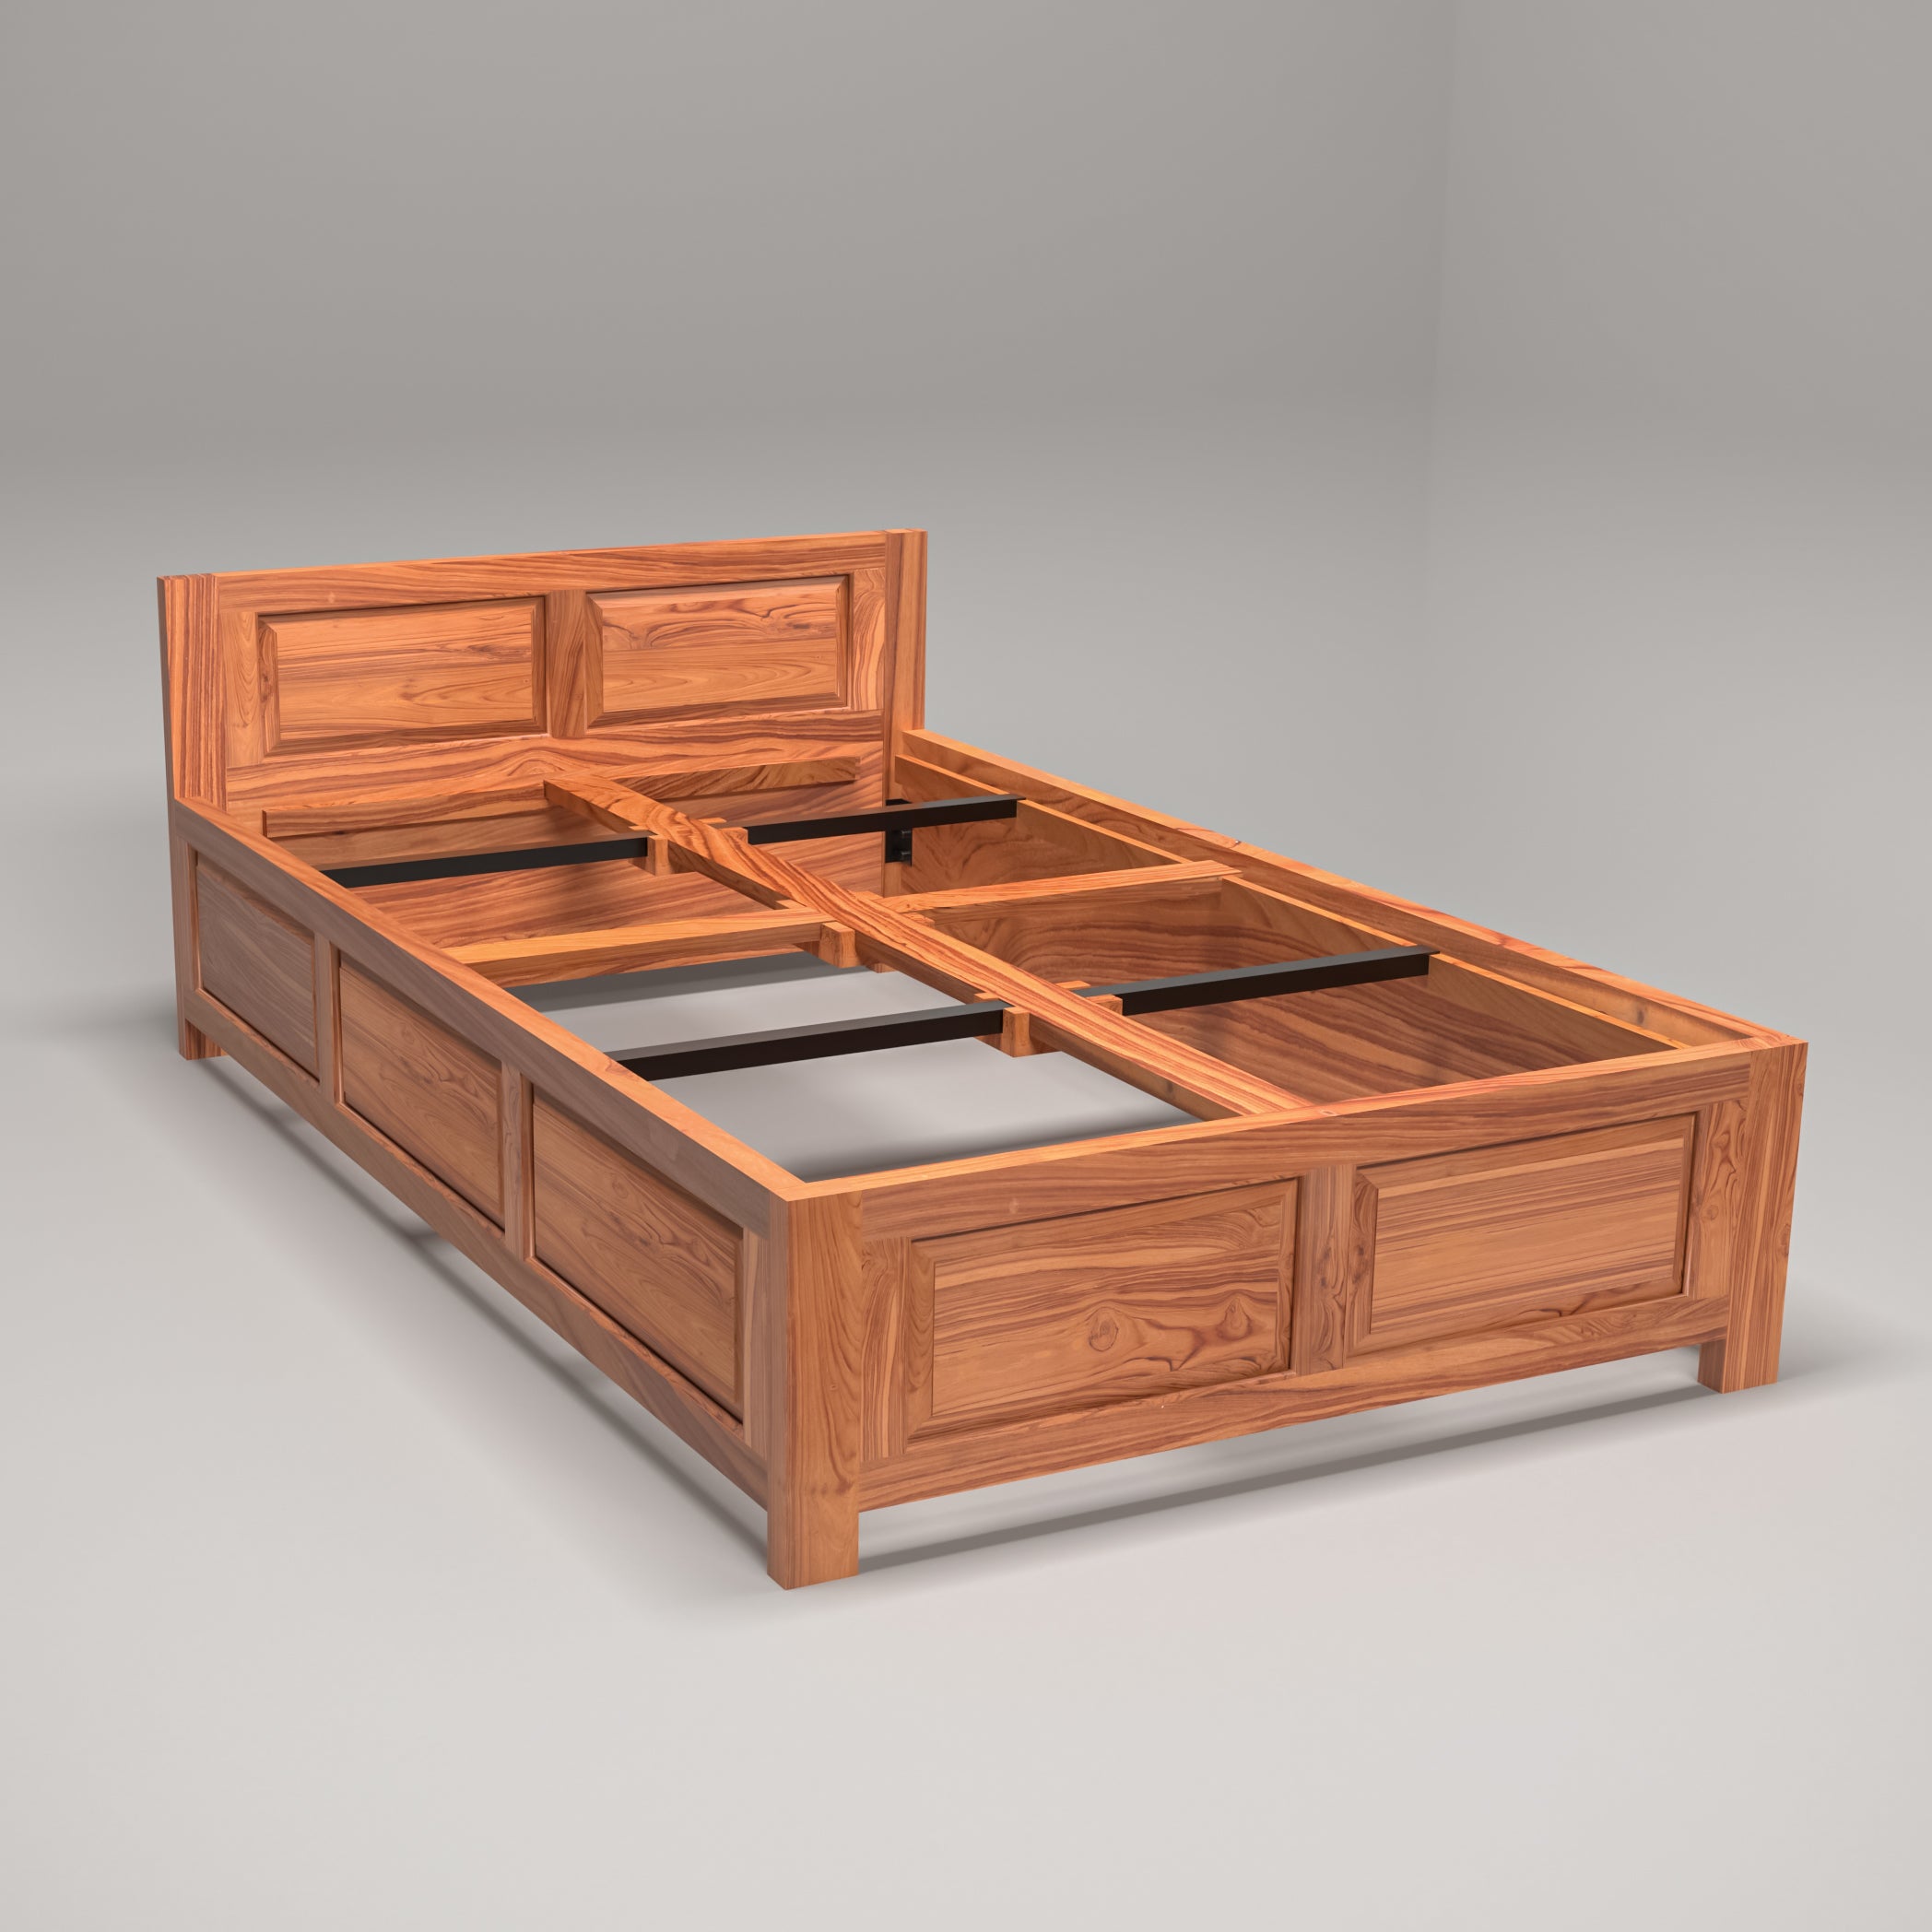 Wooden Designed Single Bed Teak Wood Bed